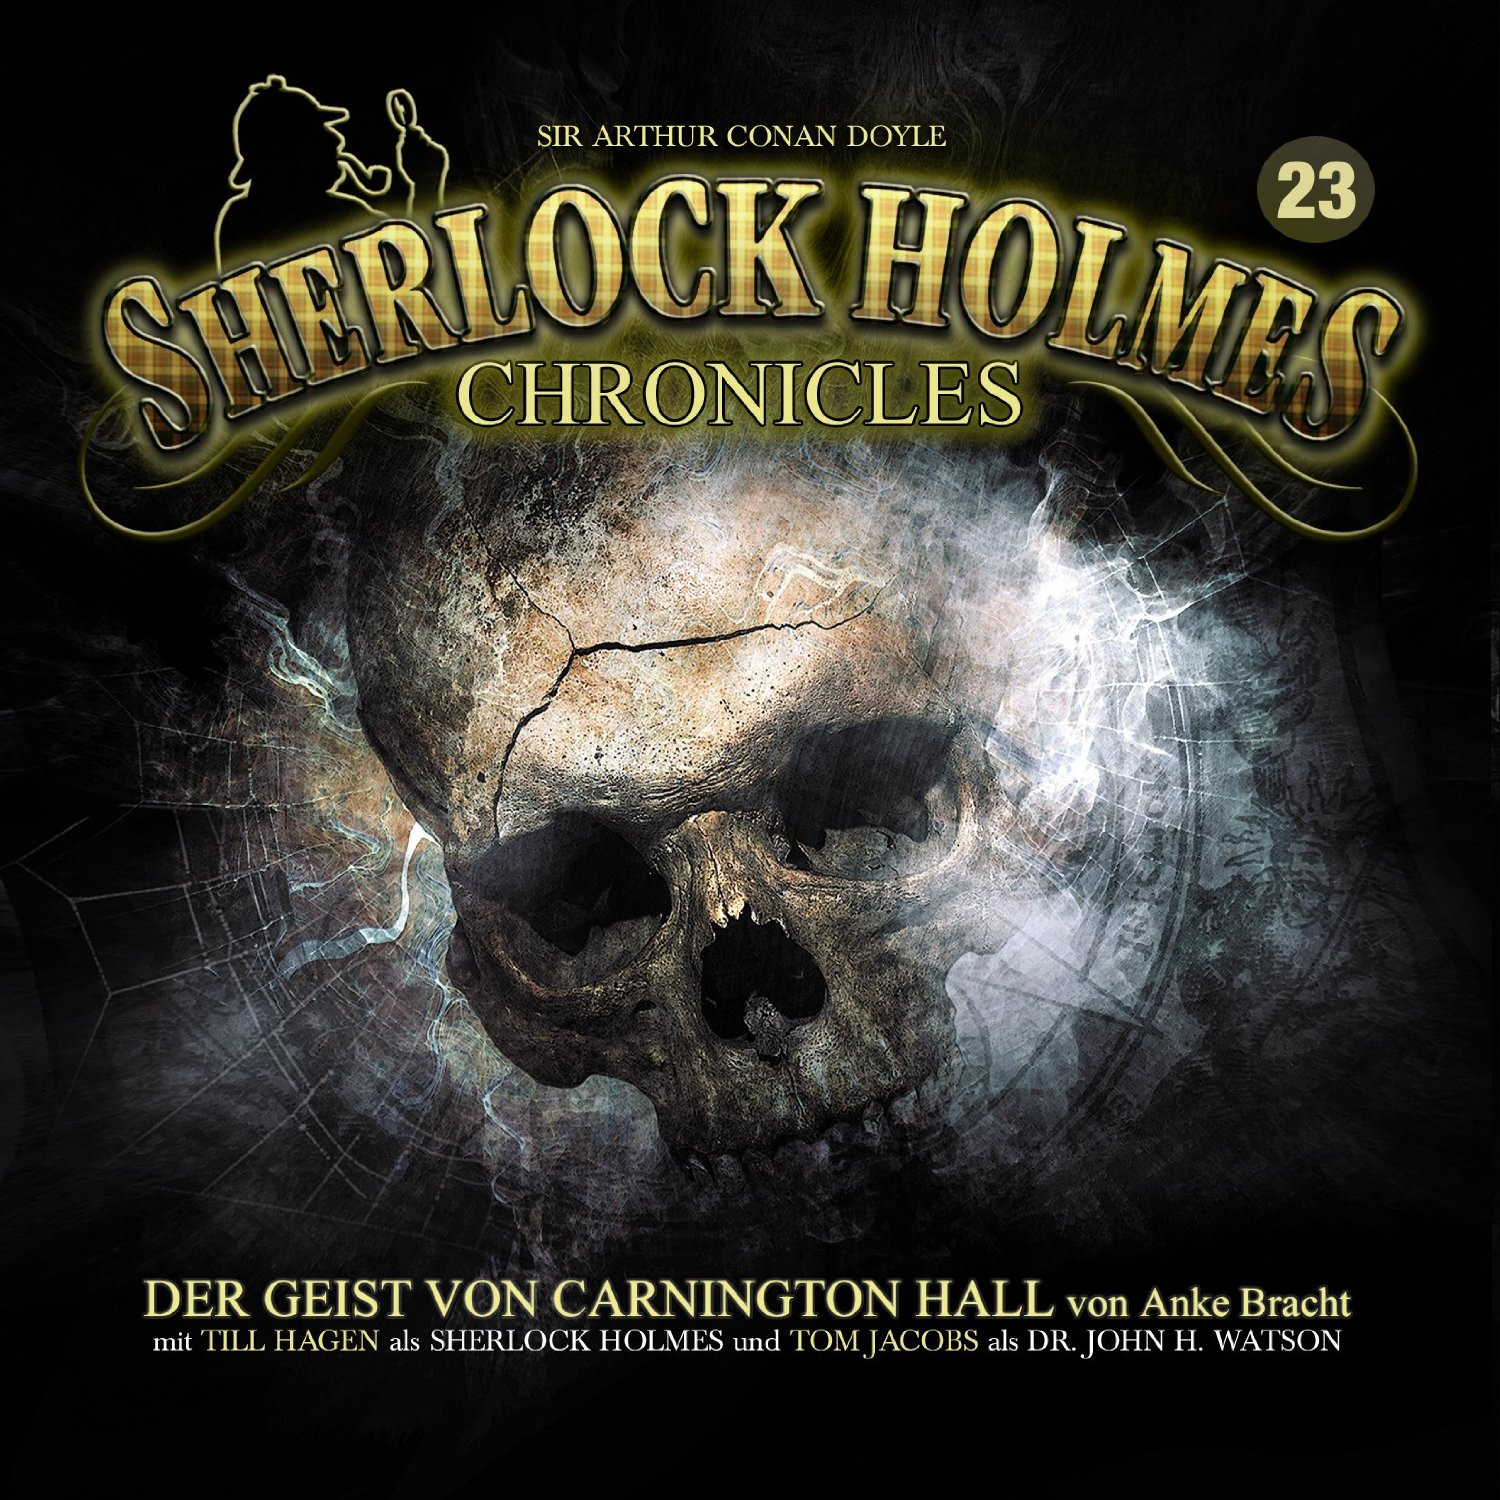 Sherlock Holmes Chronicles 23 Der Geist von Carnington Hall